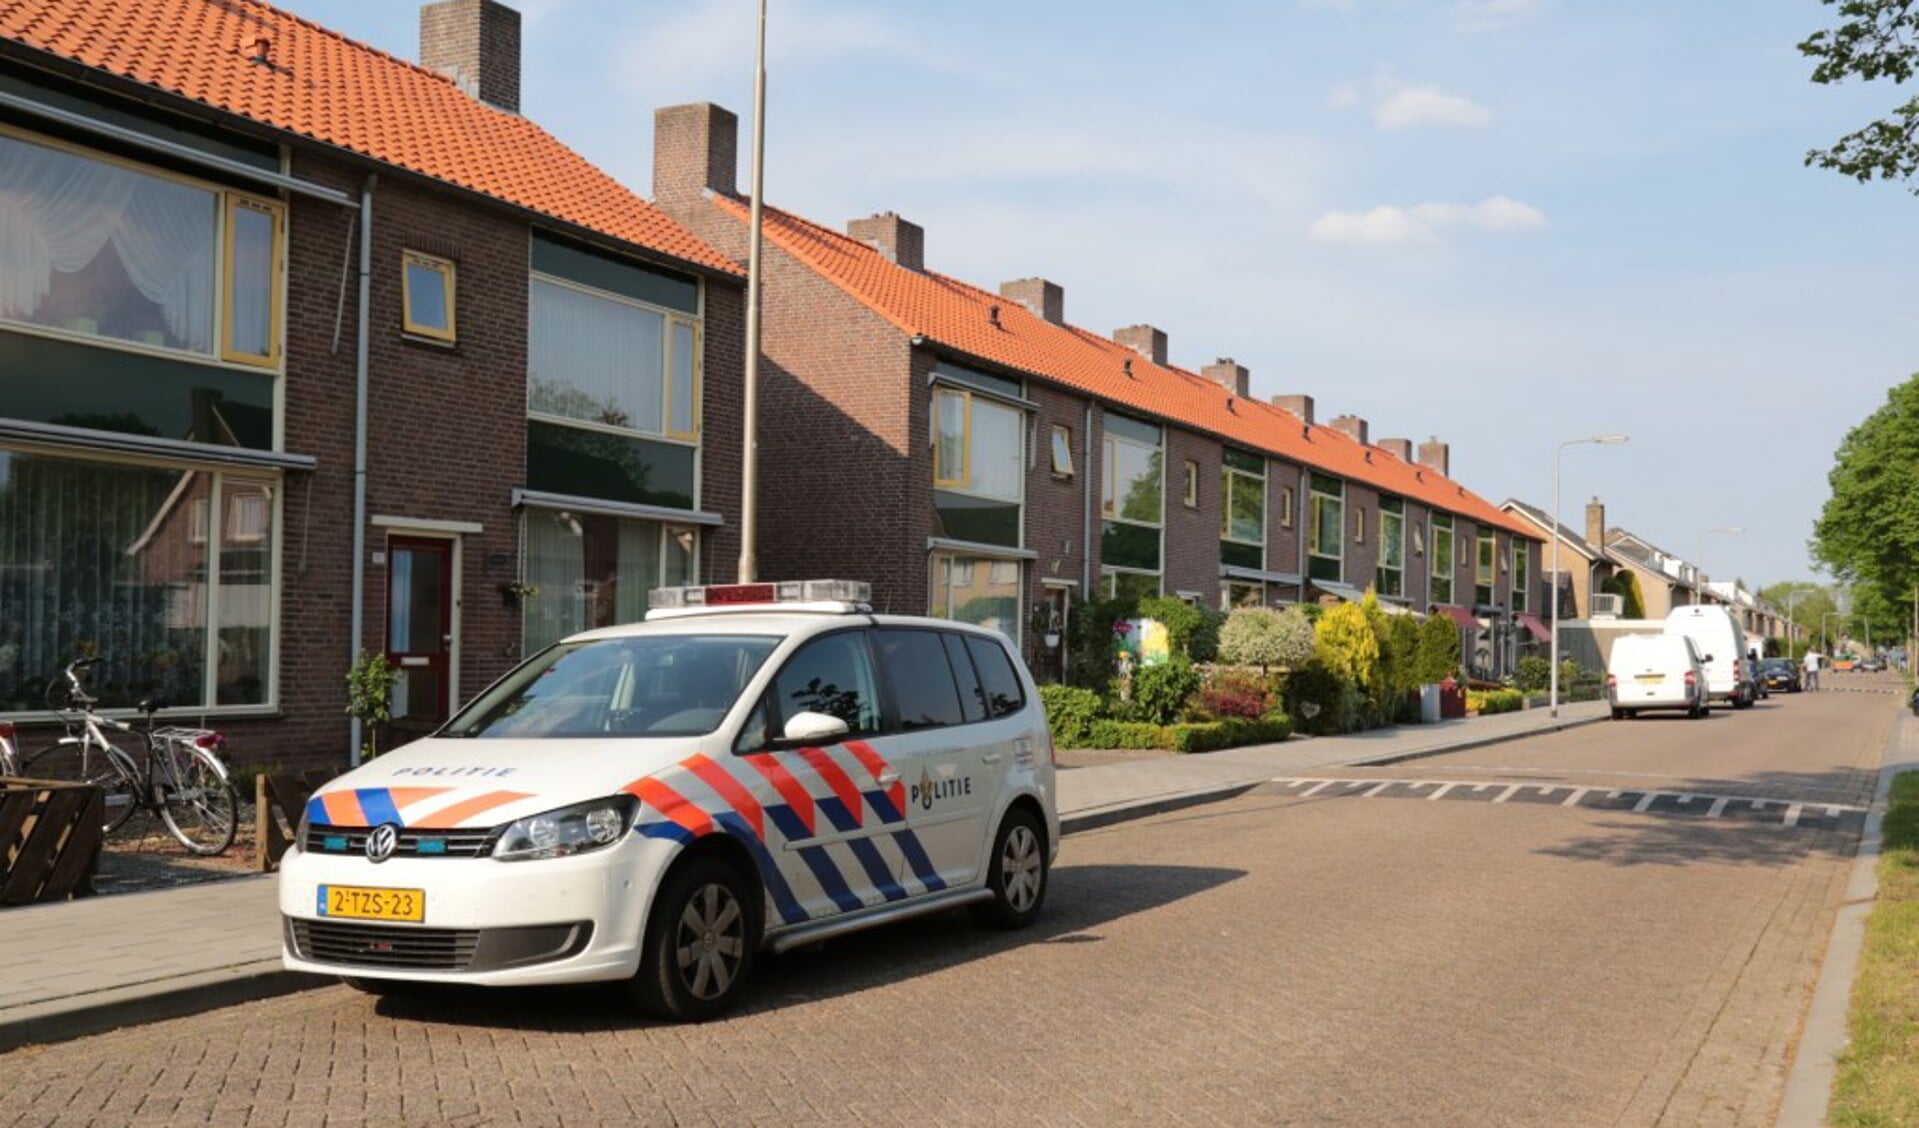 De politie deed onderzoek bij de woning ( foto's : Maickel Keijzers / Hendriks Multimedia )